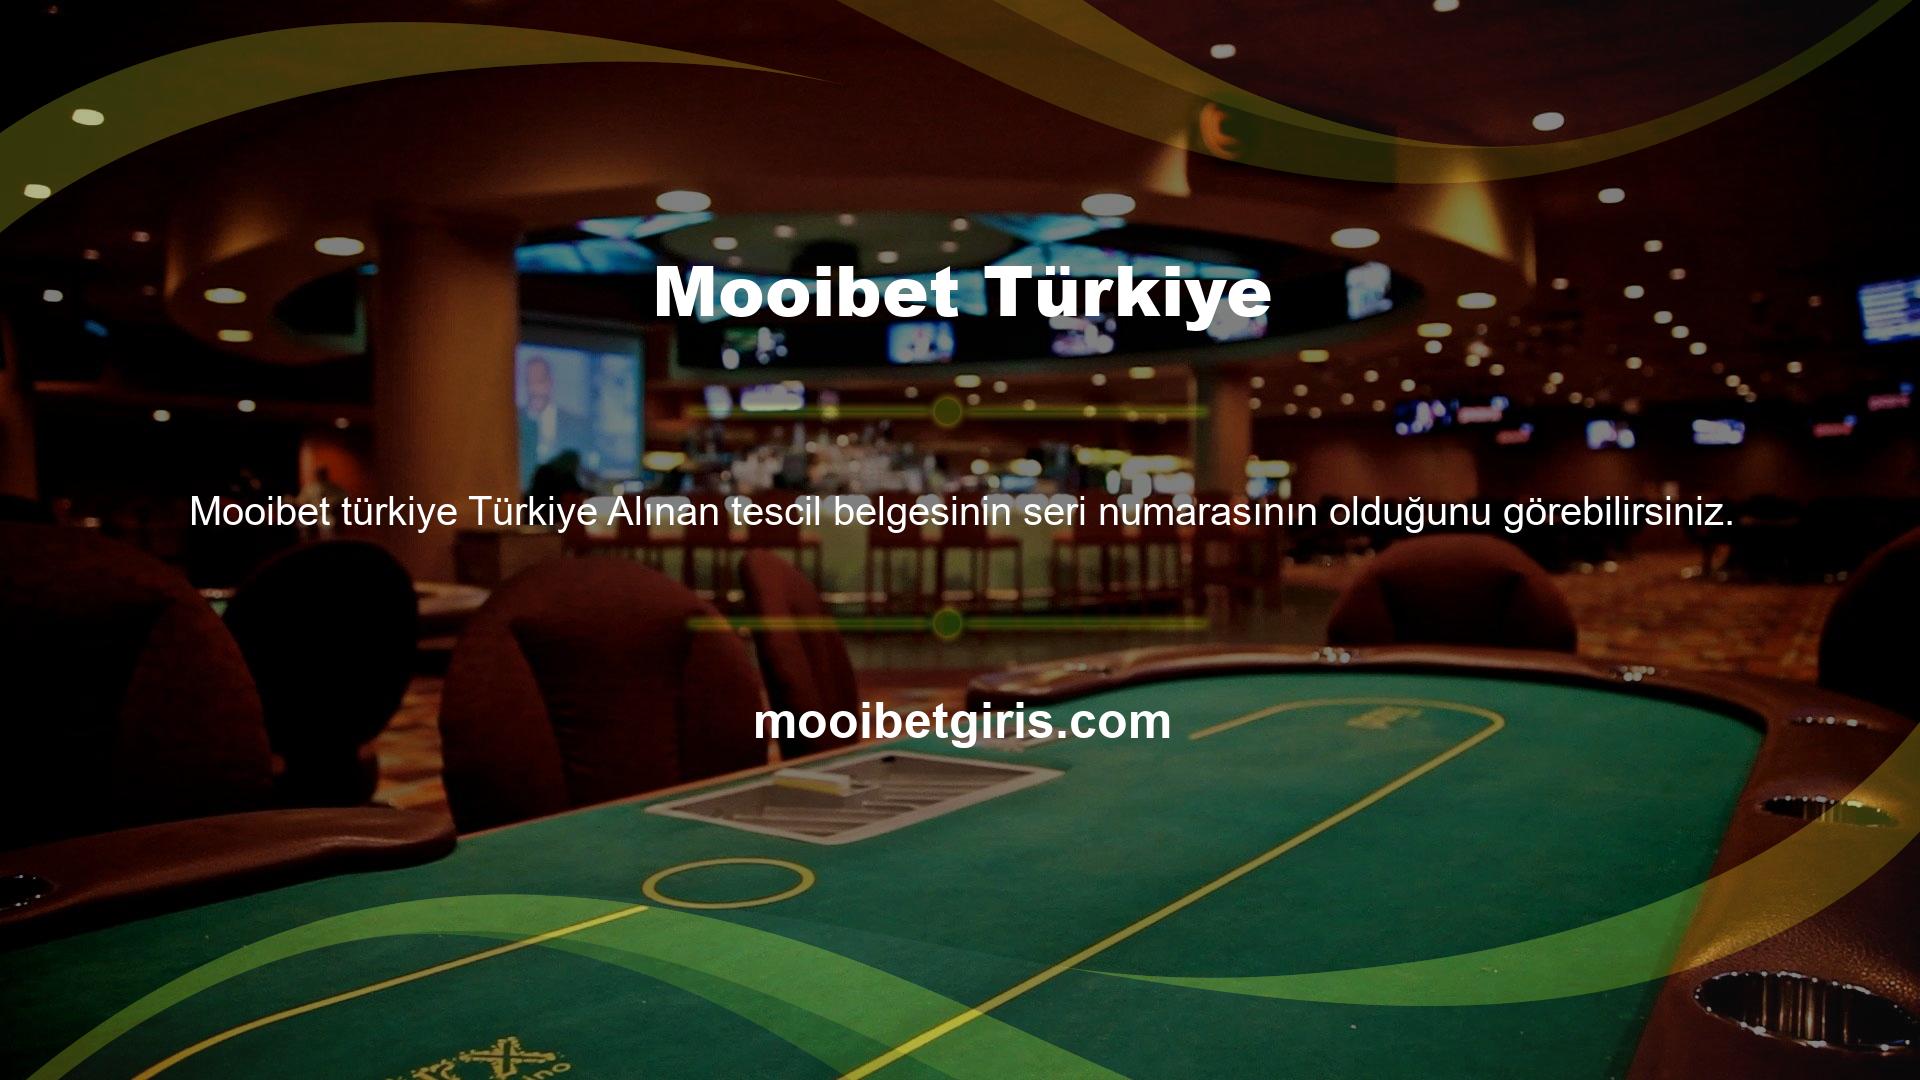 Mooibet Türkiye